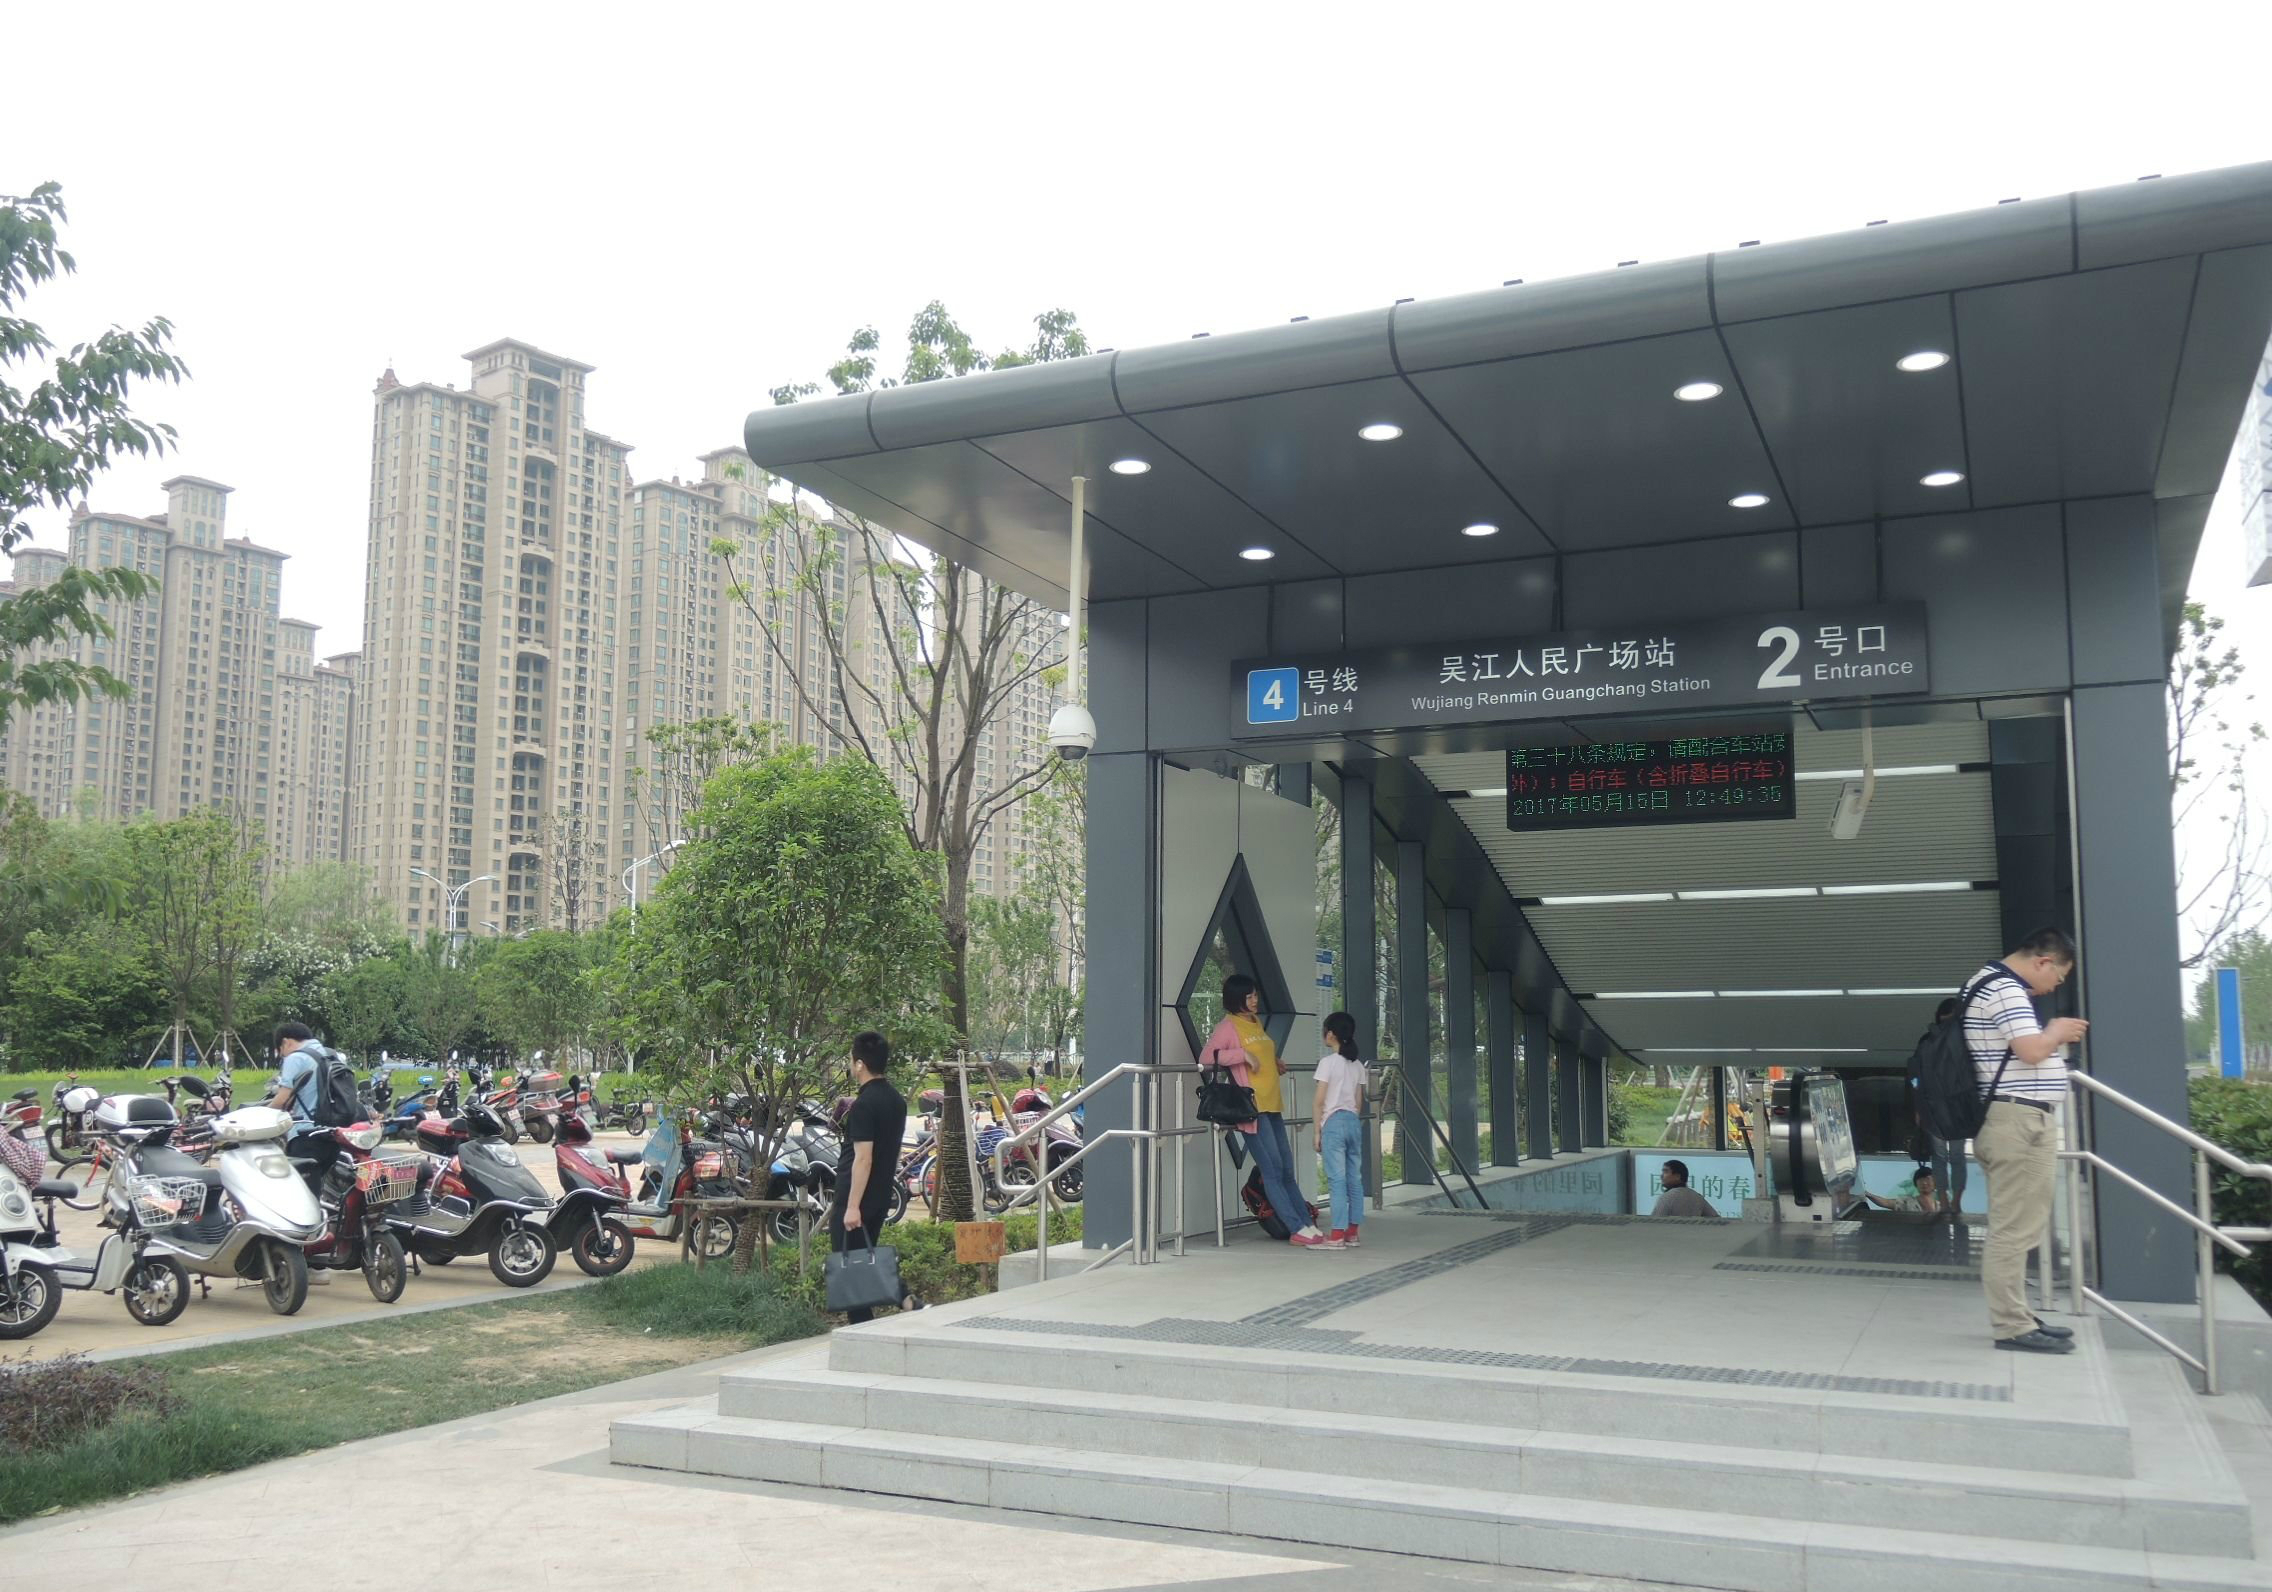 吳江人民廣場站